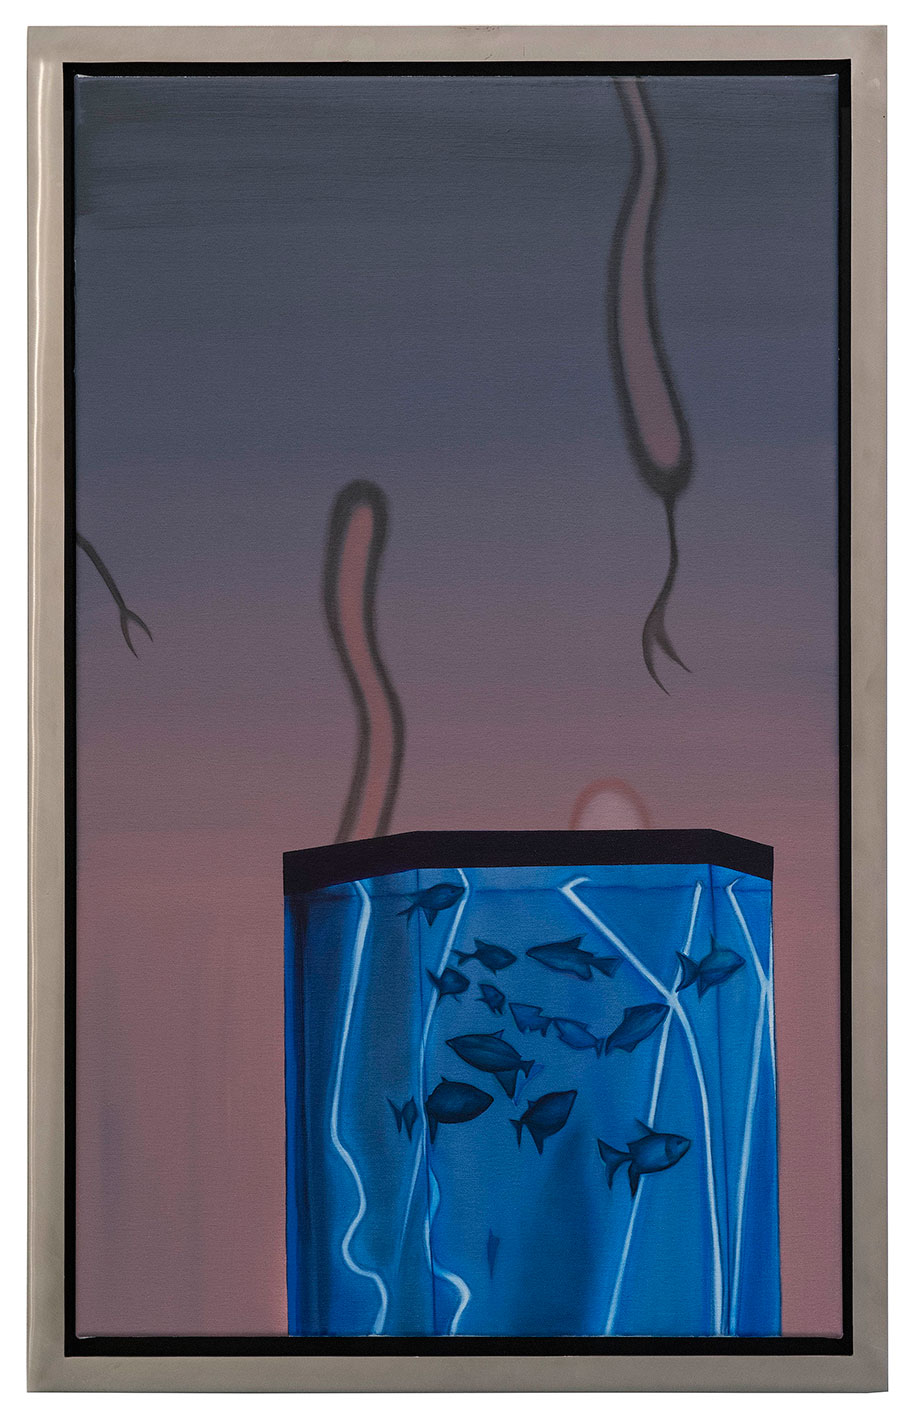 <b>Title: </b>Yves Klein Nightclub Fishtank<br /><b>Year: </b>2014<br /><b>Medium: </b>Oil on canvas, in polished stainless steel artist’s frame<br /><b>Size: </b>98 x 63 cm